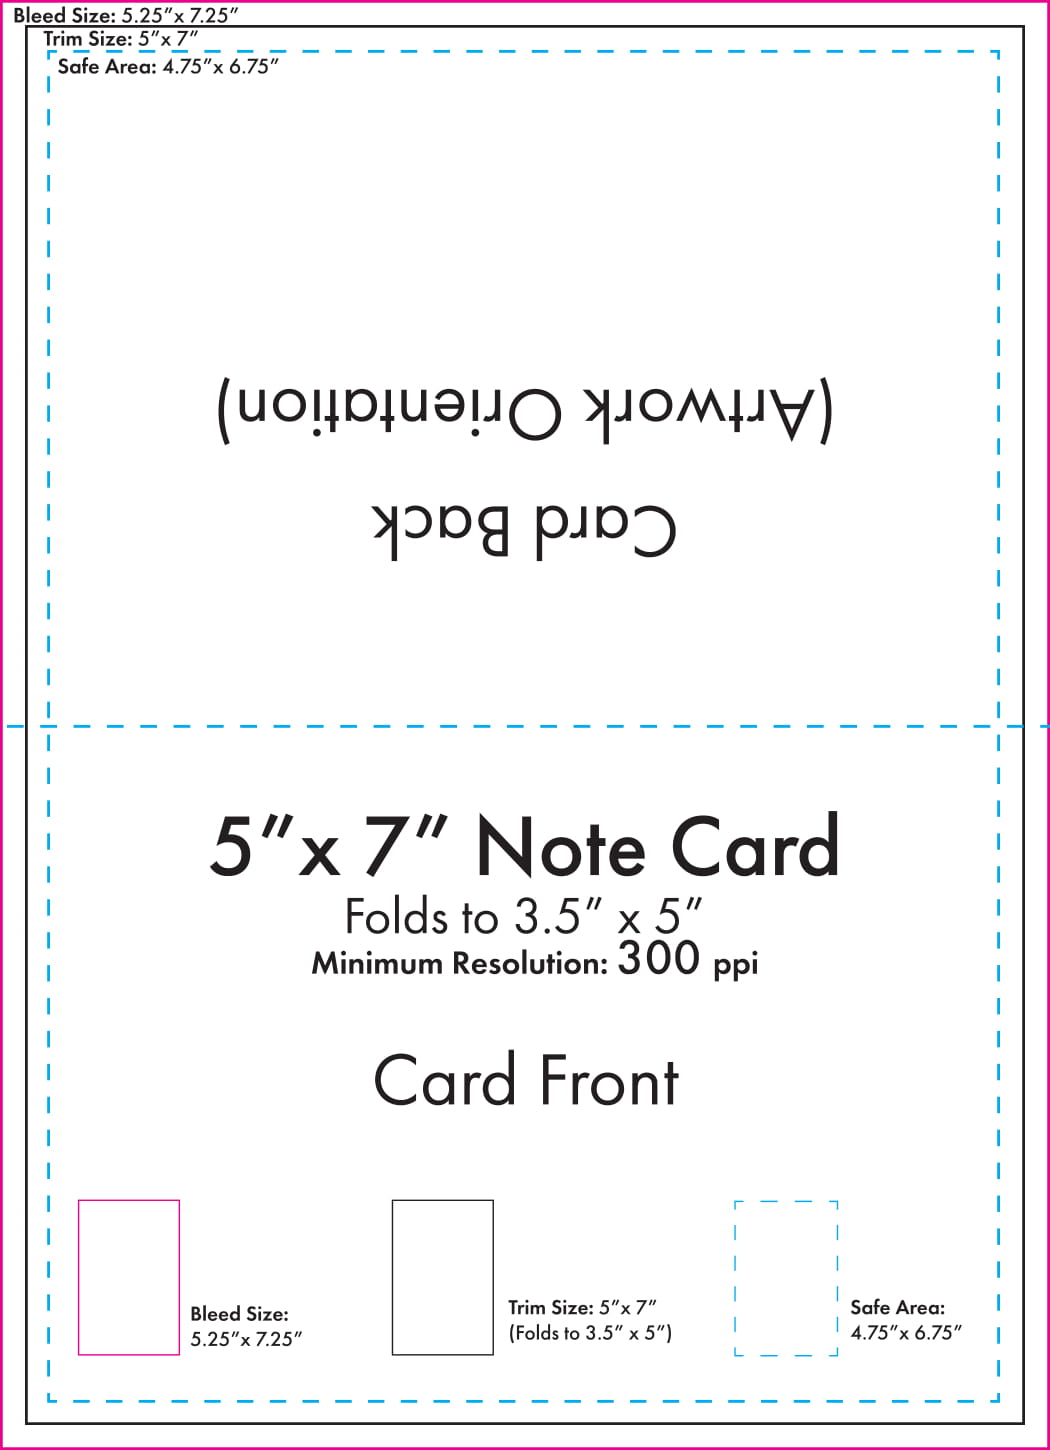 5 x 7 Note Card Template - U.S. Press